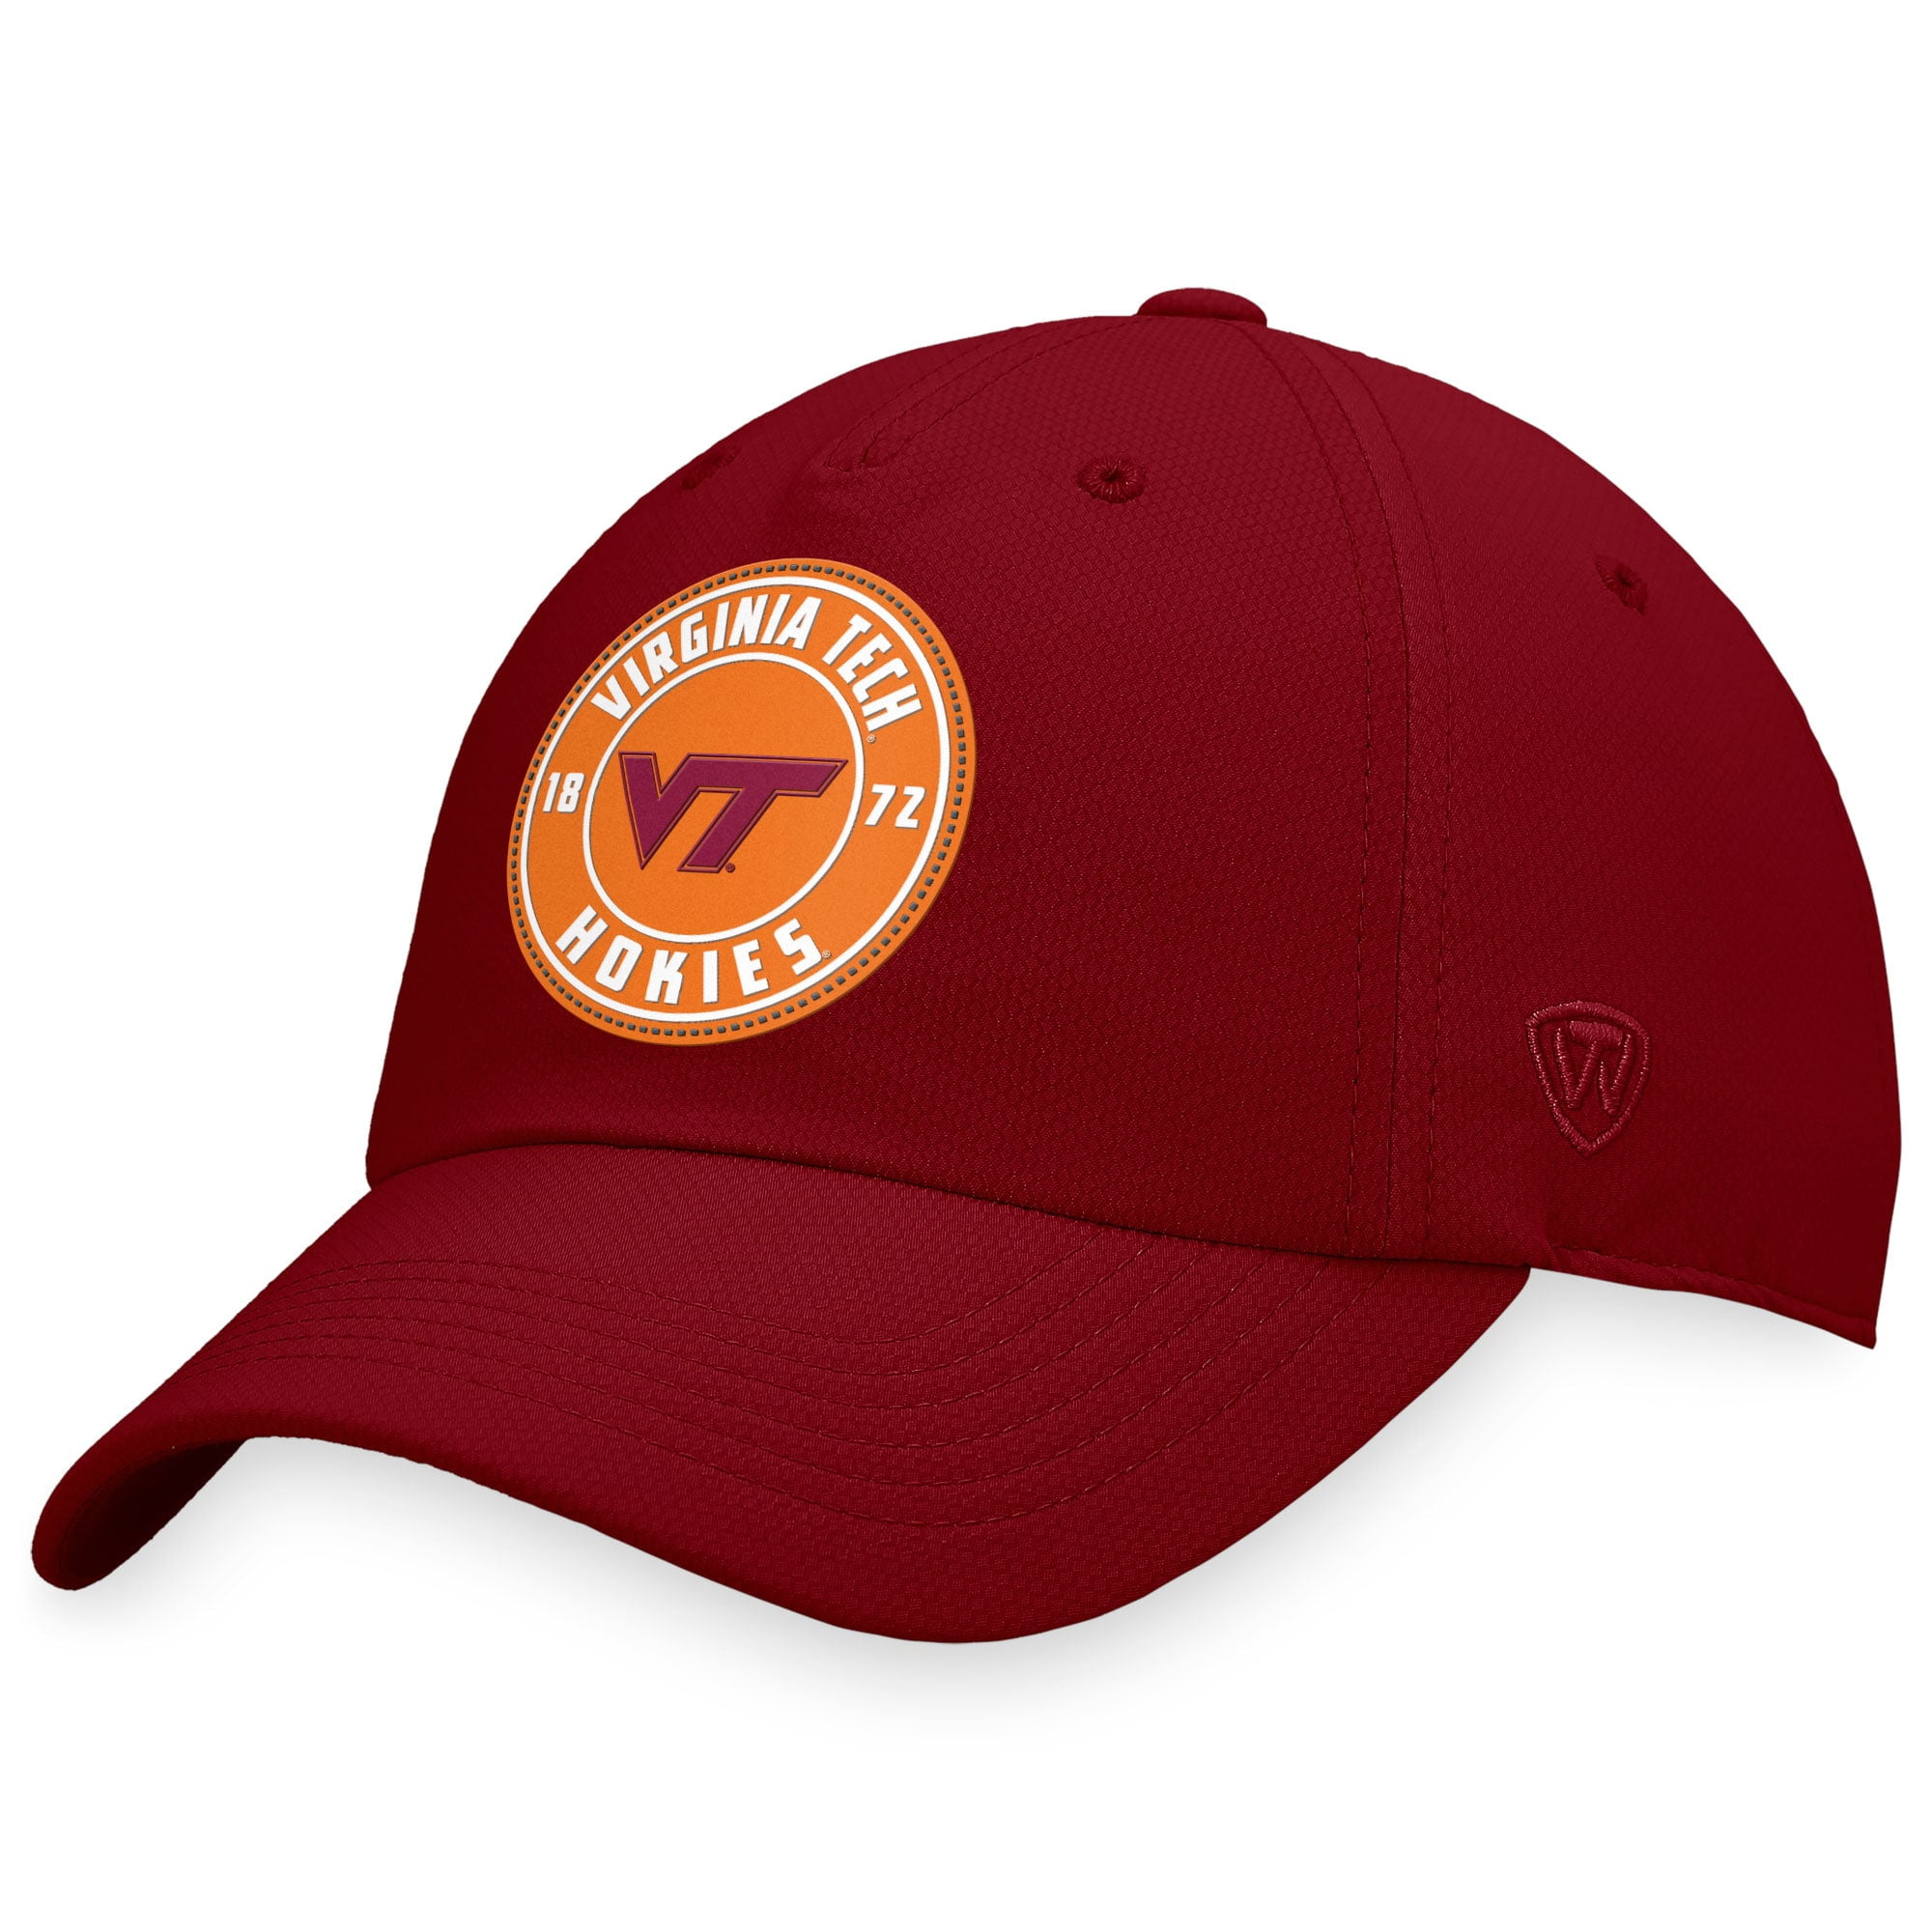 Hokies basketball cap